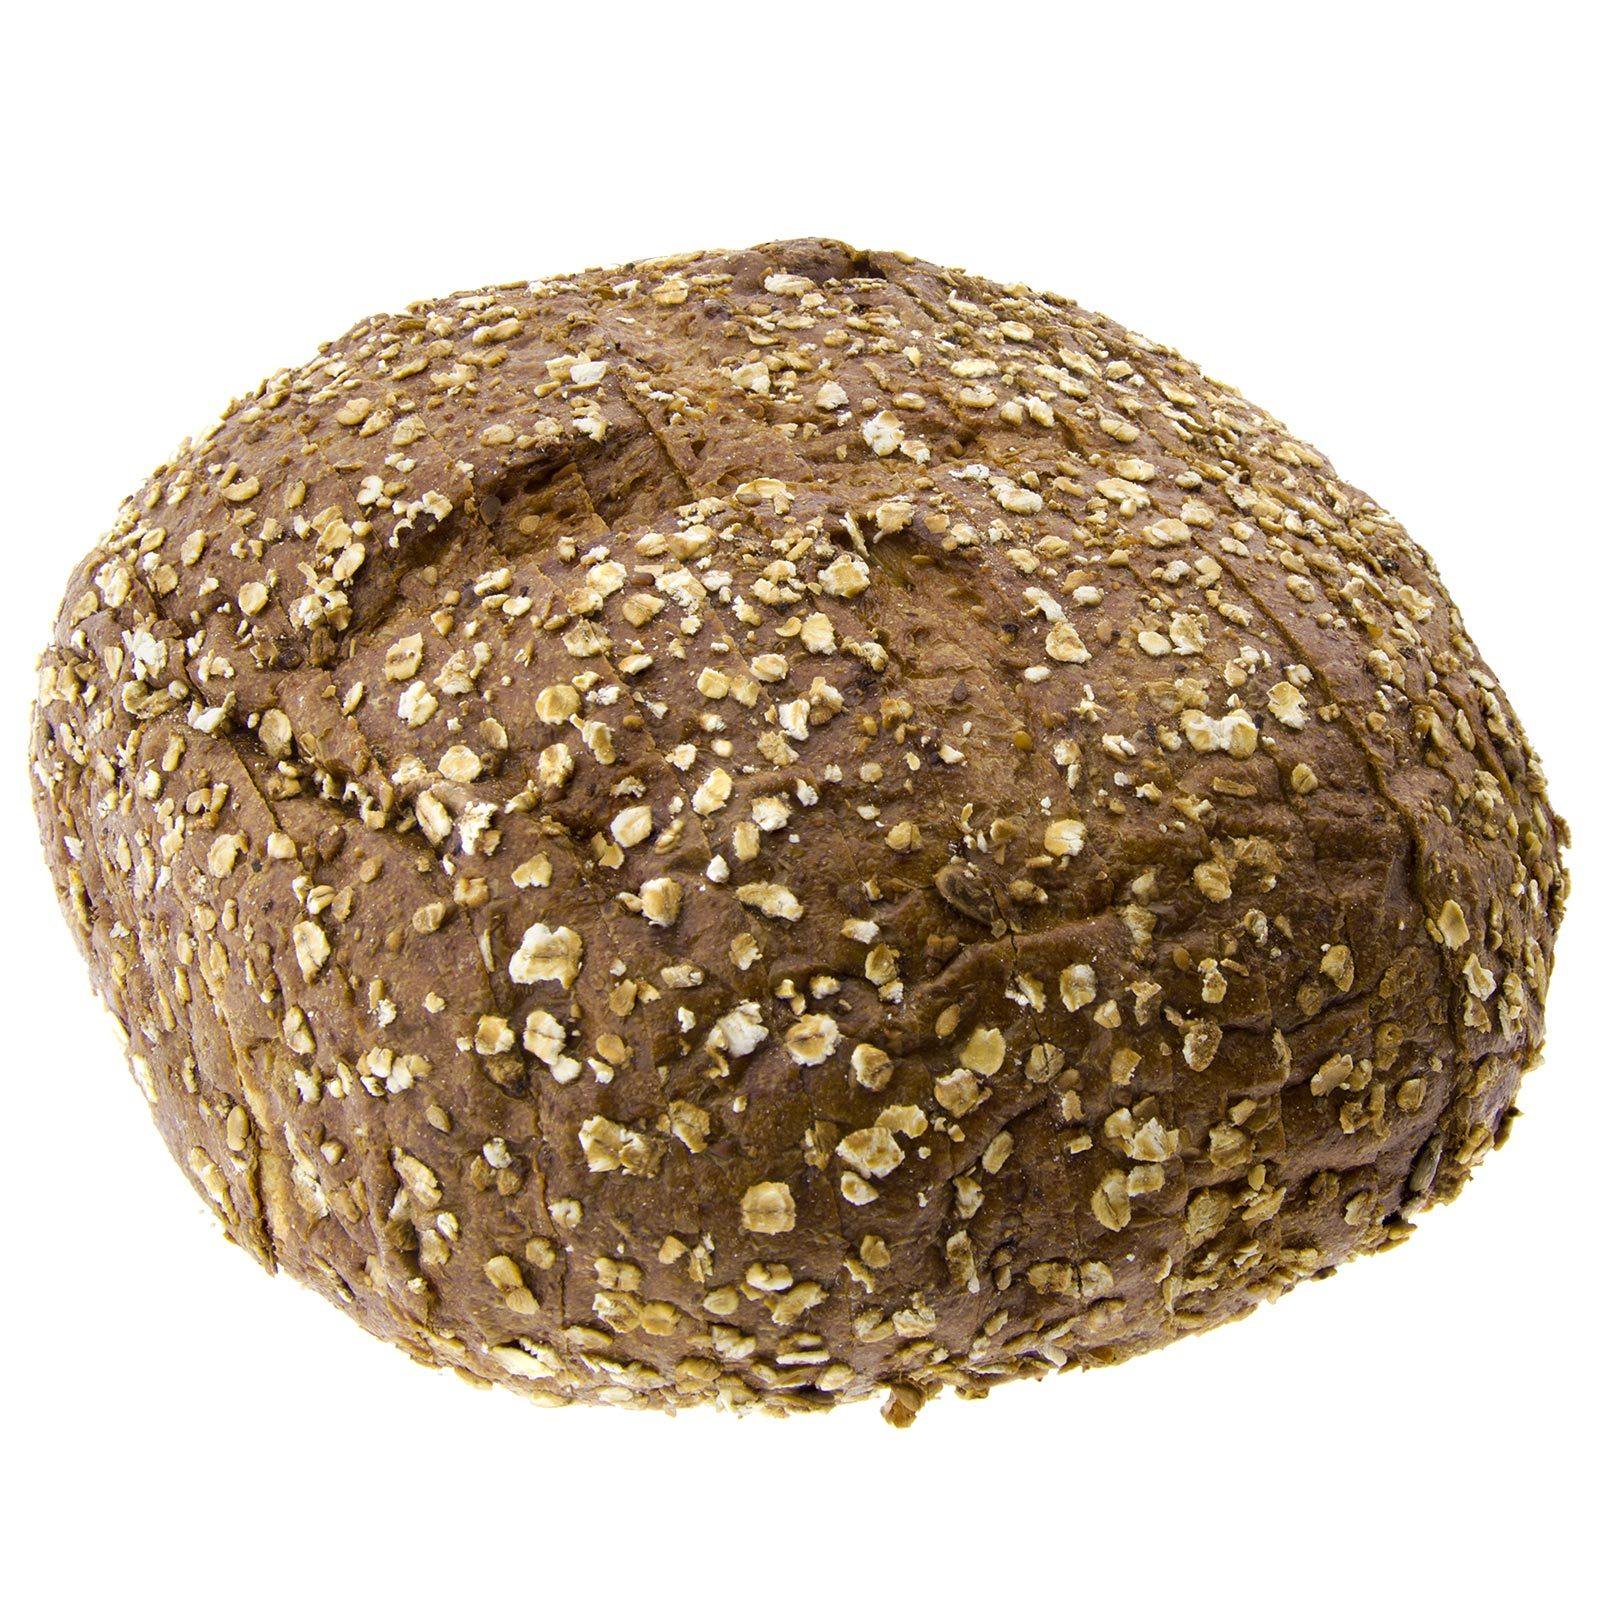 Pan Cabezón de Trigo Khorasan Kamut® Integral con Cereales 450g (sin cortar)